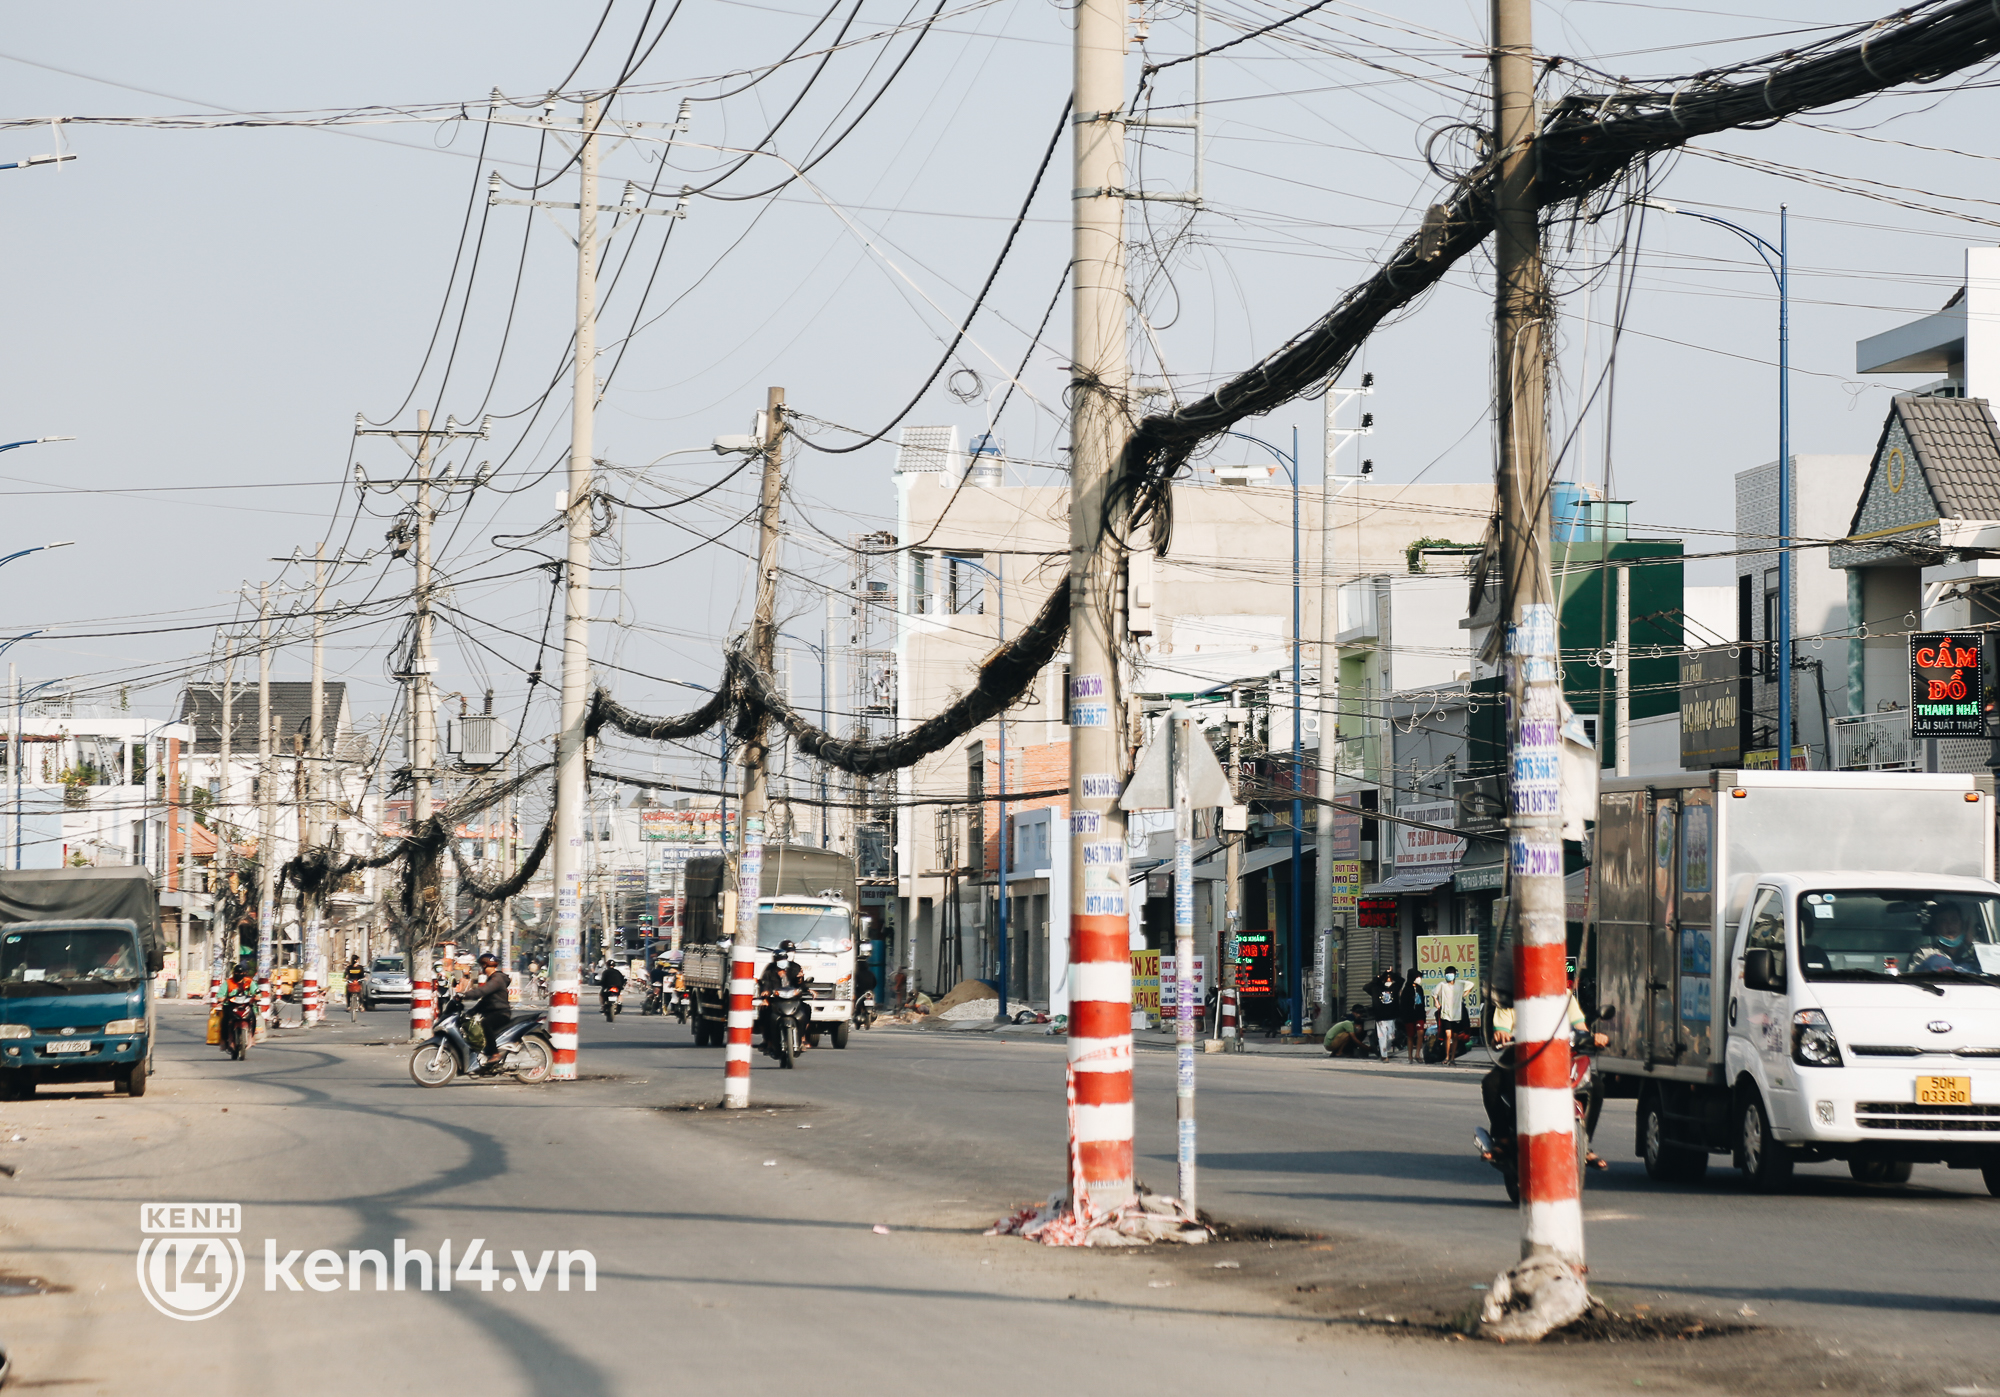 Hàng trăm cột điện bị bỏ quên giữa đường ở Sài Gòn, người dân nín thở luồn lách - Ảnh 3.